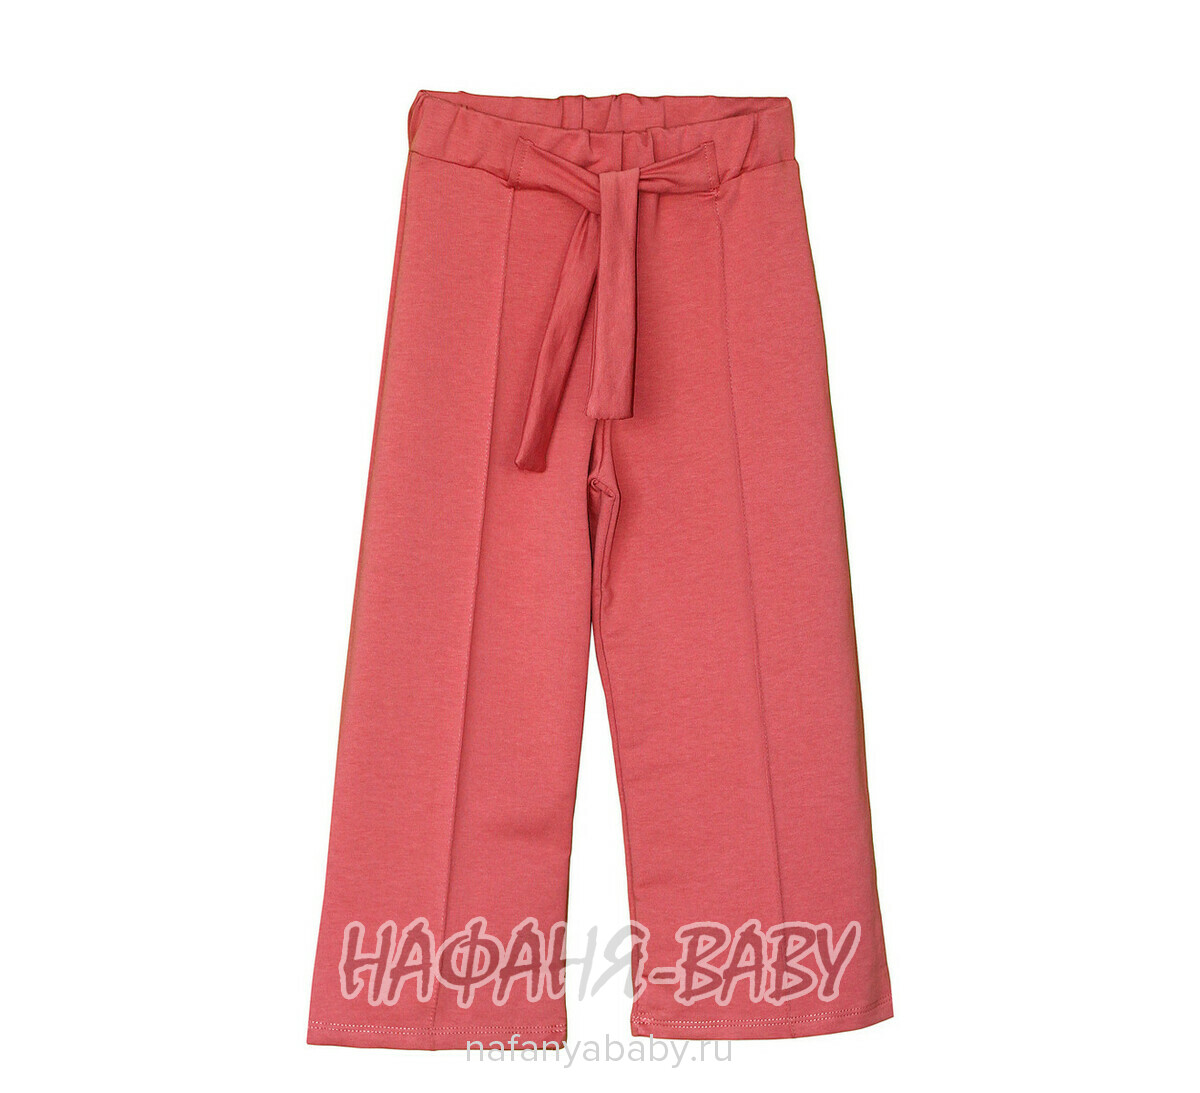 Модные брюки палаццо Con Con, купить в интернет магазине Нафаня. арт: 6388.